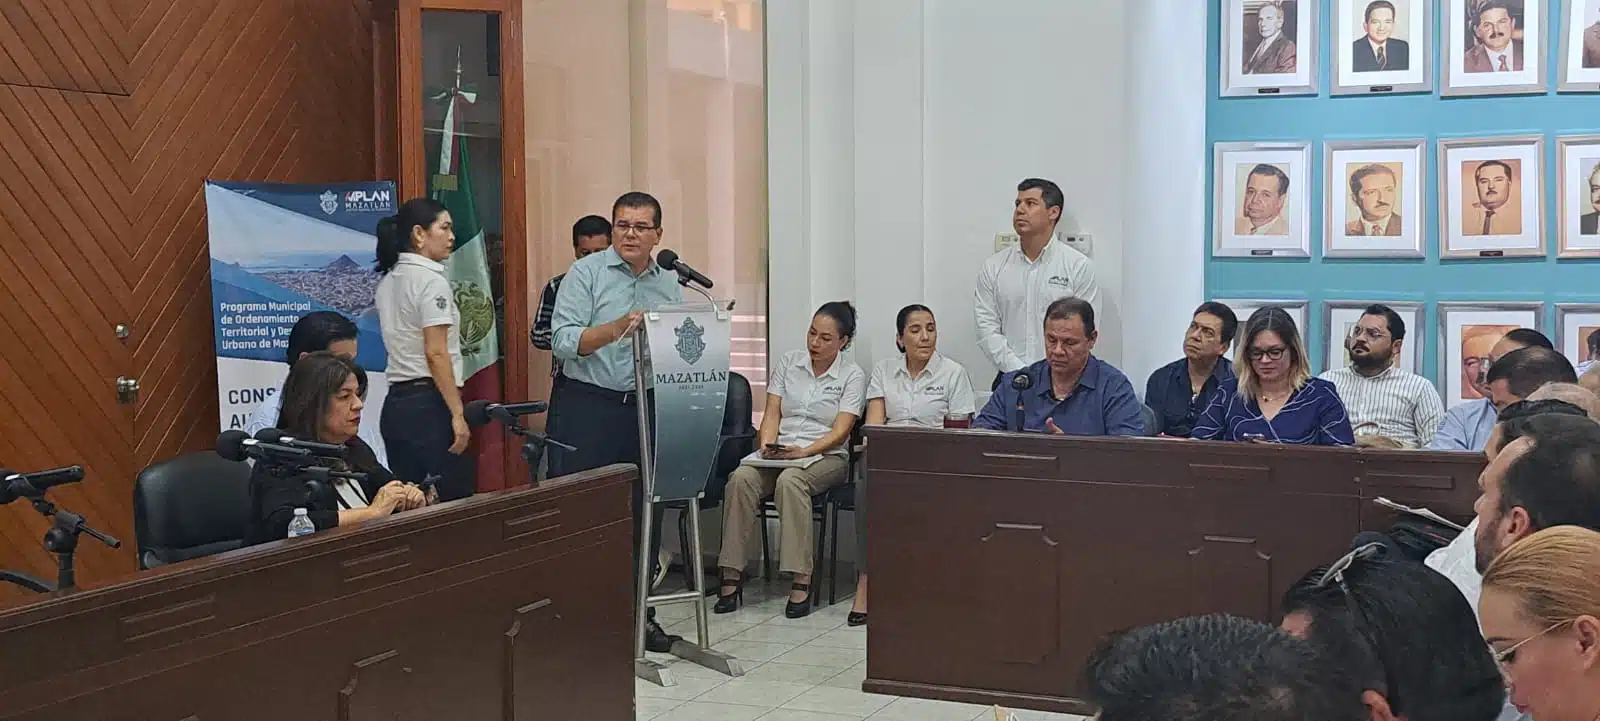 El alcalde Édgar González Zataraín dijo que el municipio se encuentra en una situación de oportunidad